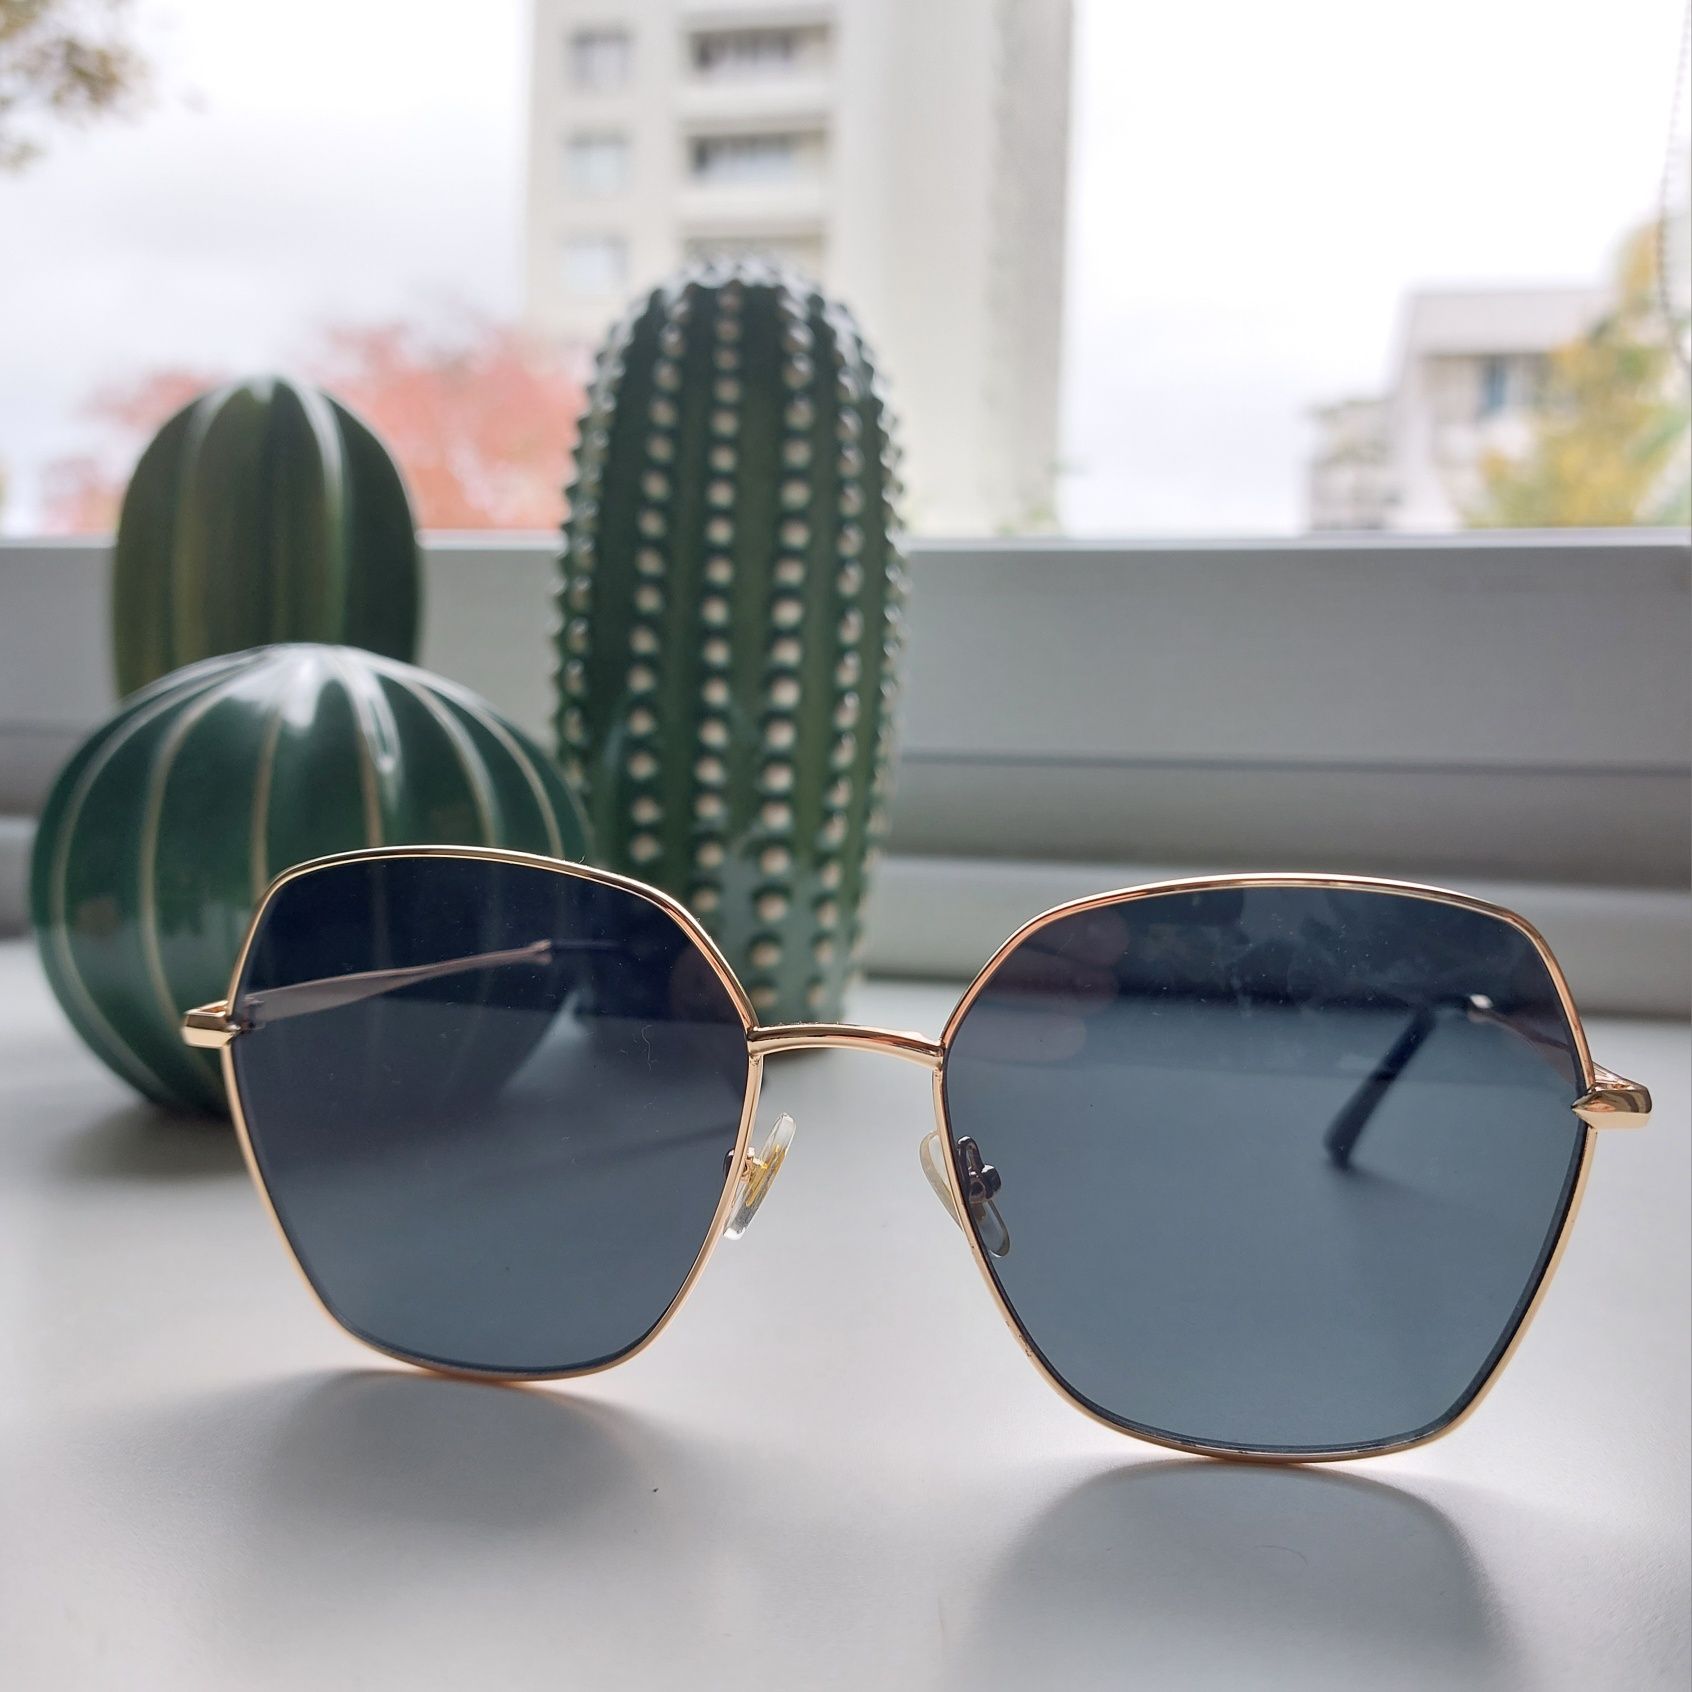 Okulary przeciwsłoneczne w złotej oprawce